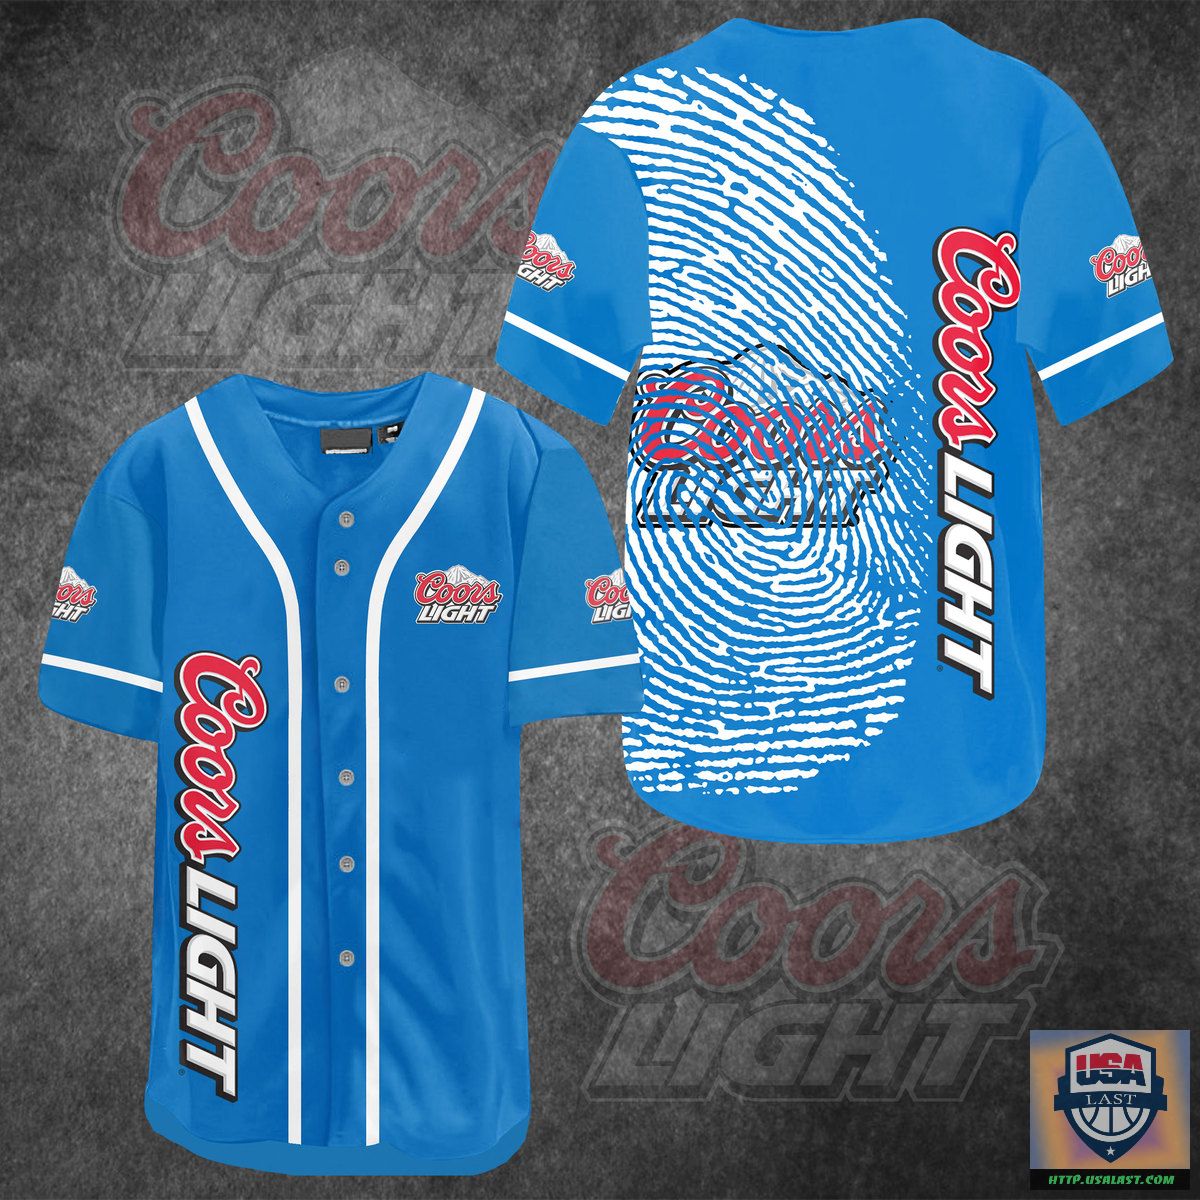 Coors Light DNA Baseball Jersey Shirt – Usalast